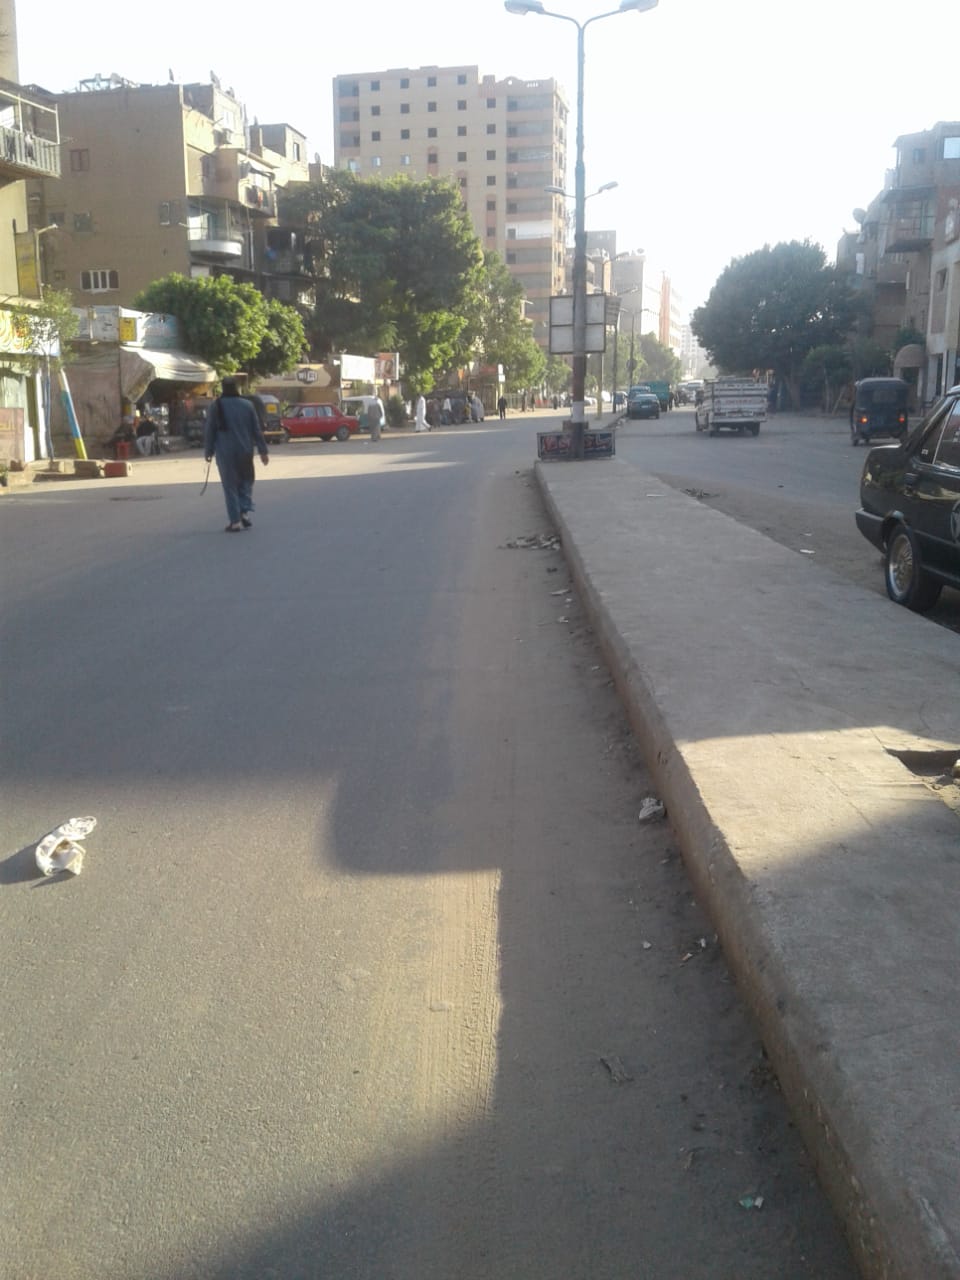 شارع كريستال عصفور بمدينة شبرا الخيمة (1)